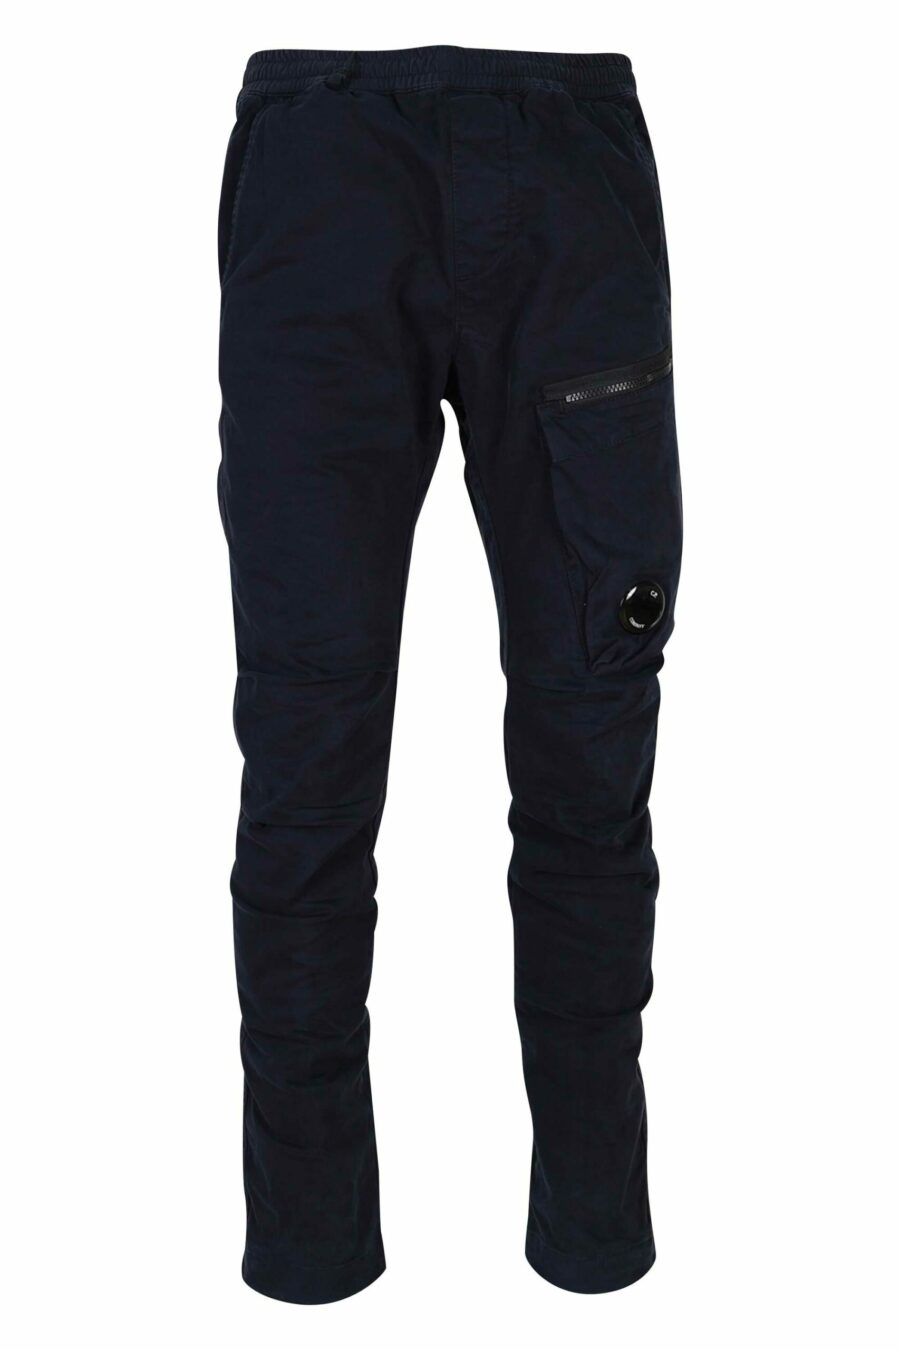 Pantalon en satin stretch bleu foncé avec poche latérale et lentille logo - 7620943578485 1 scaled